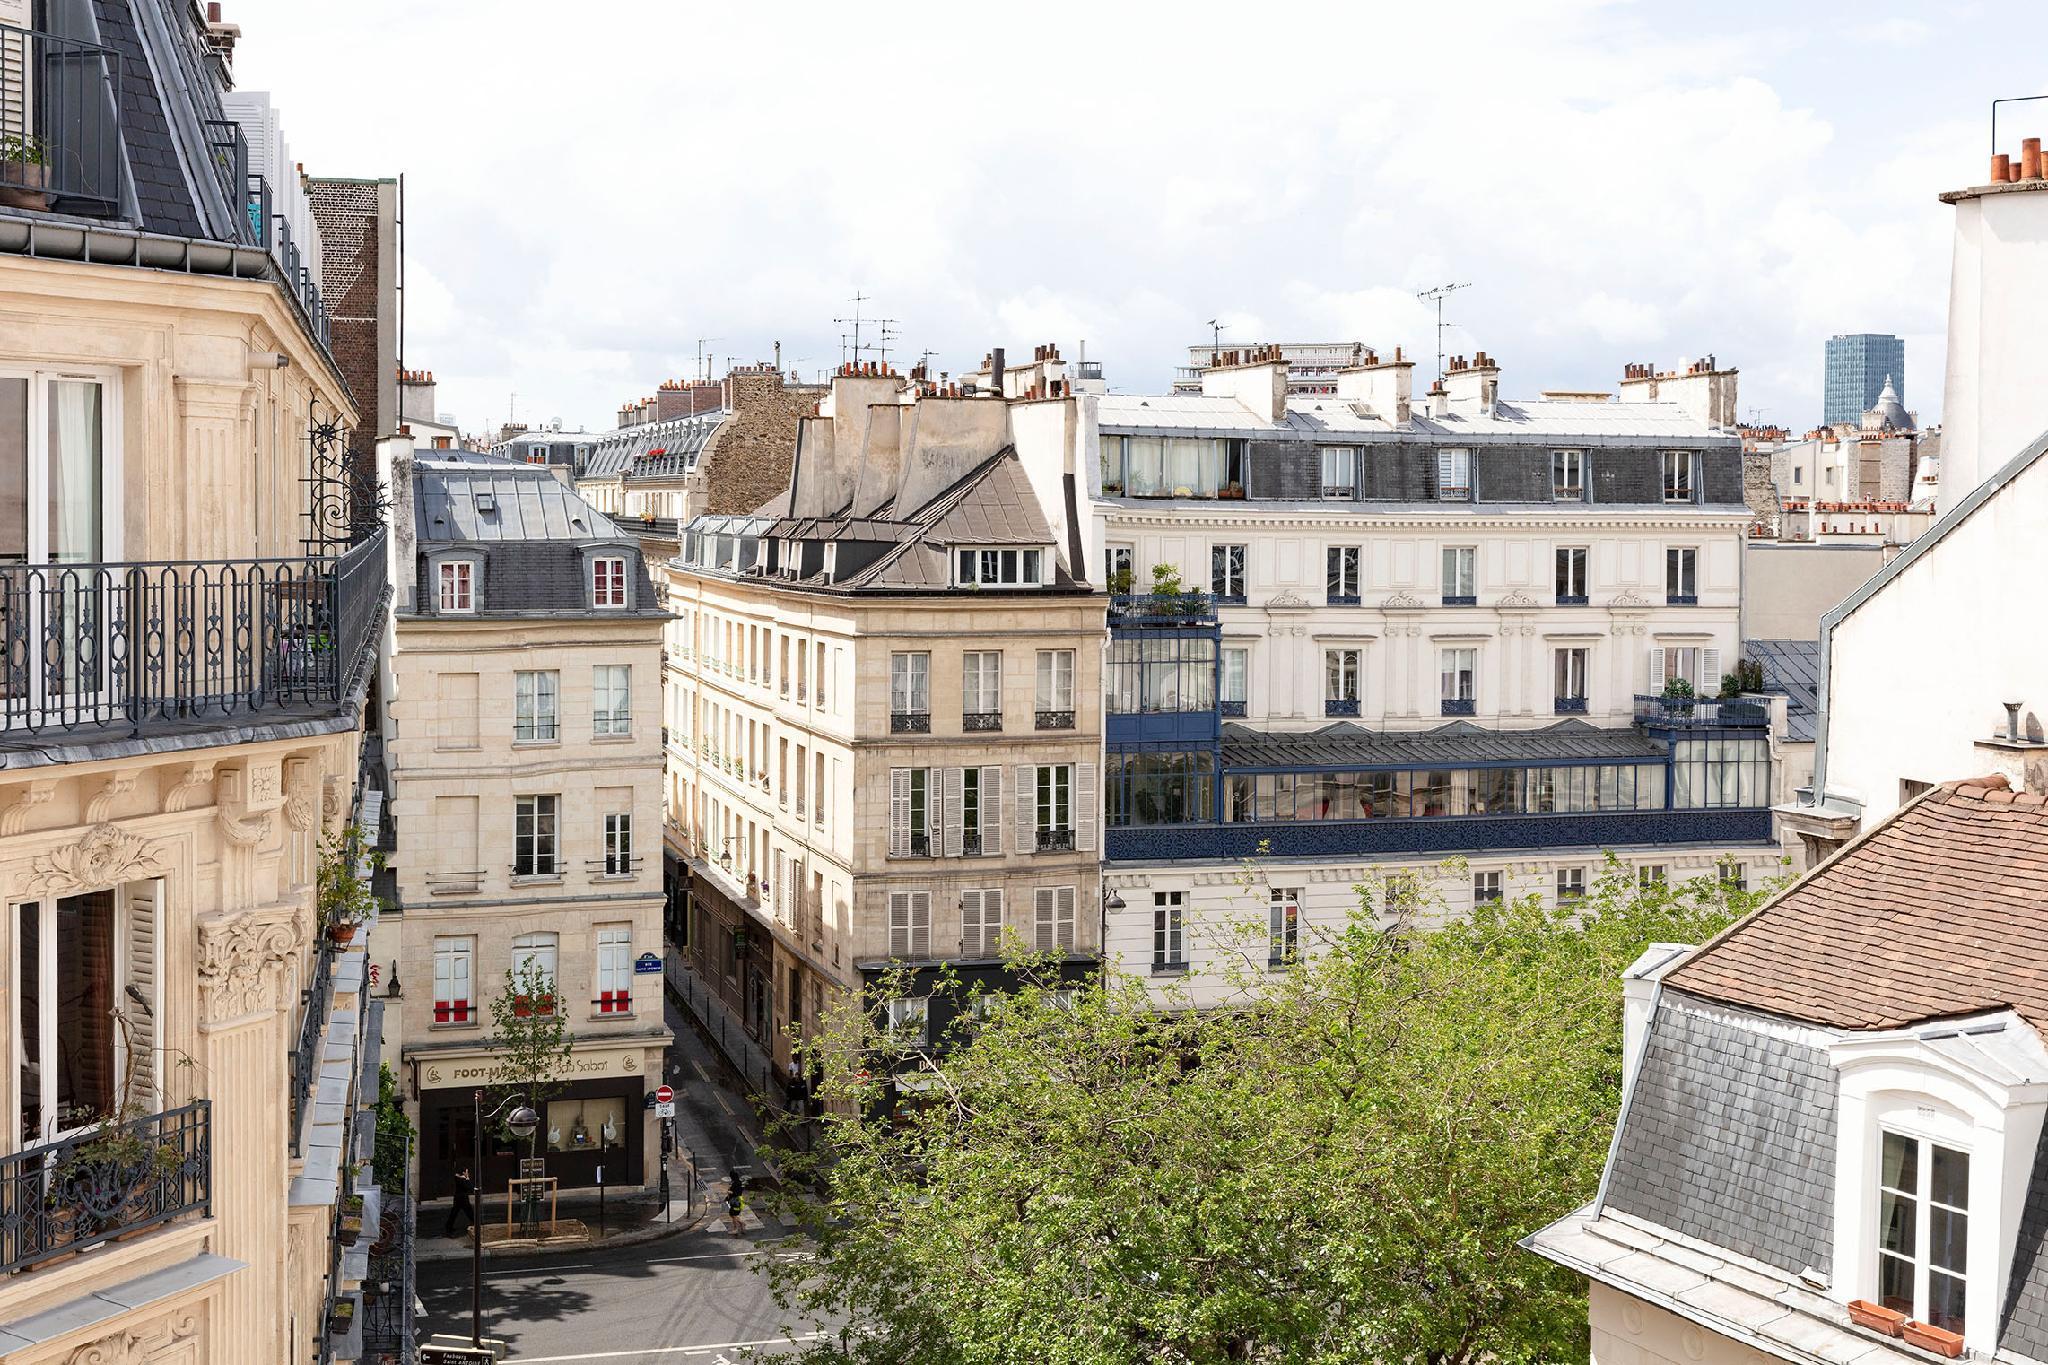 Hotel Bastille Speria Párizs Kültér fotó